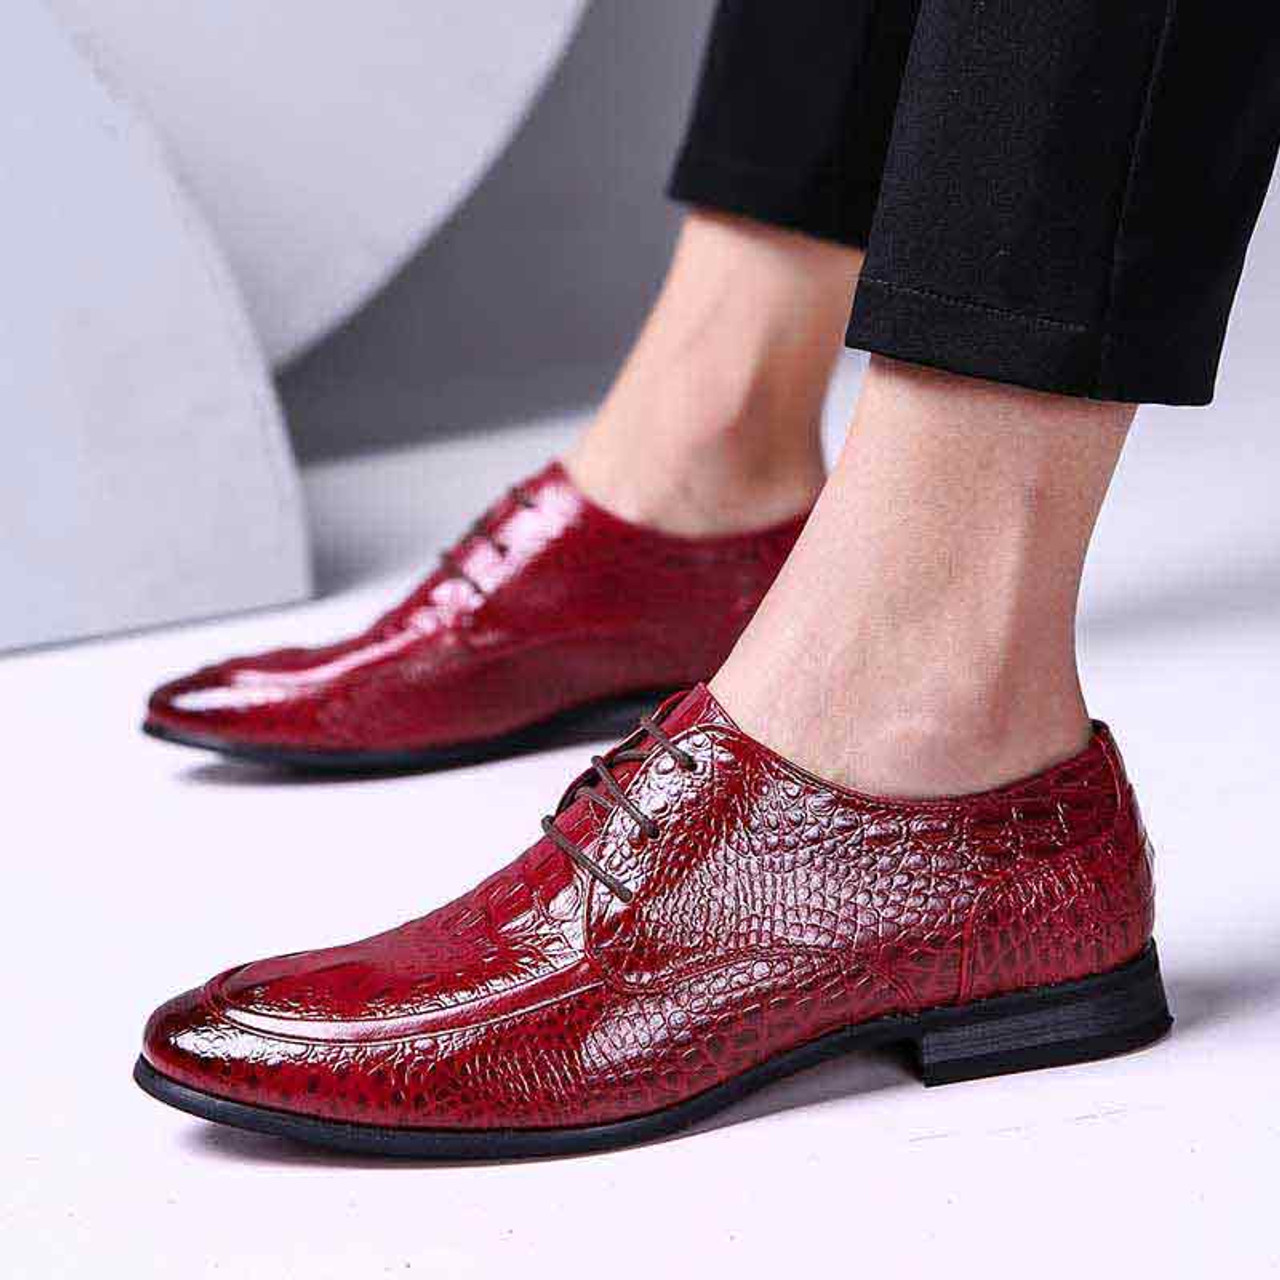 Red crocodile skin pattern derby dress shoe | Mens dress shoes online ...